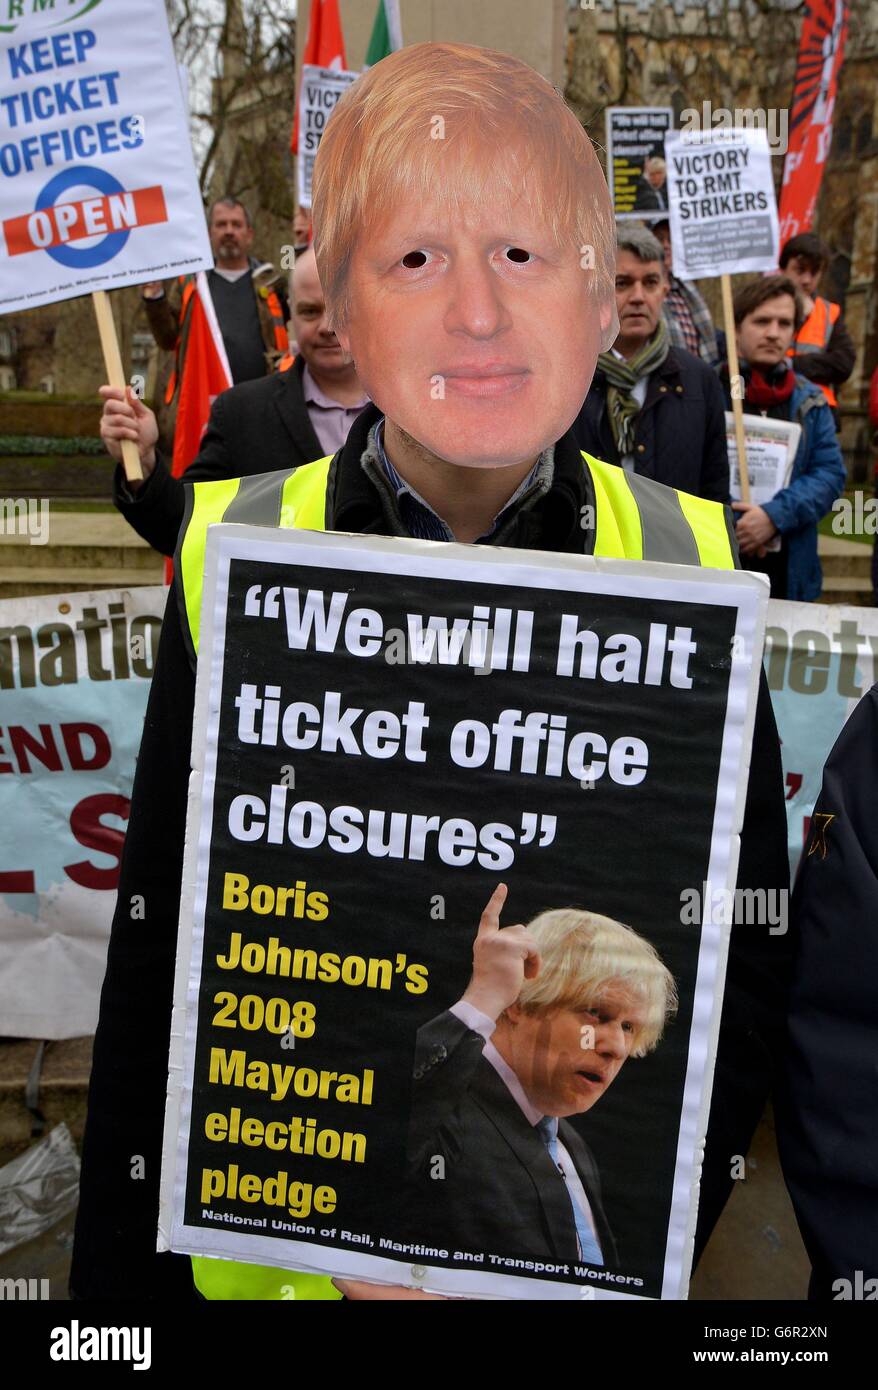 Una persona lleva una máscara de Boris Johnson ante una protesta de la Unión de Ferrocarriles Marítimos y Transportes (RMT) frente a las Casas del Parlamento en Westminster, Londres, contra el cierre de las oficinas de billetes de metro en Londres. Foto de stock